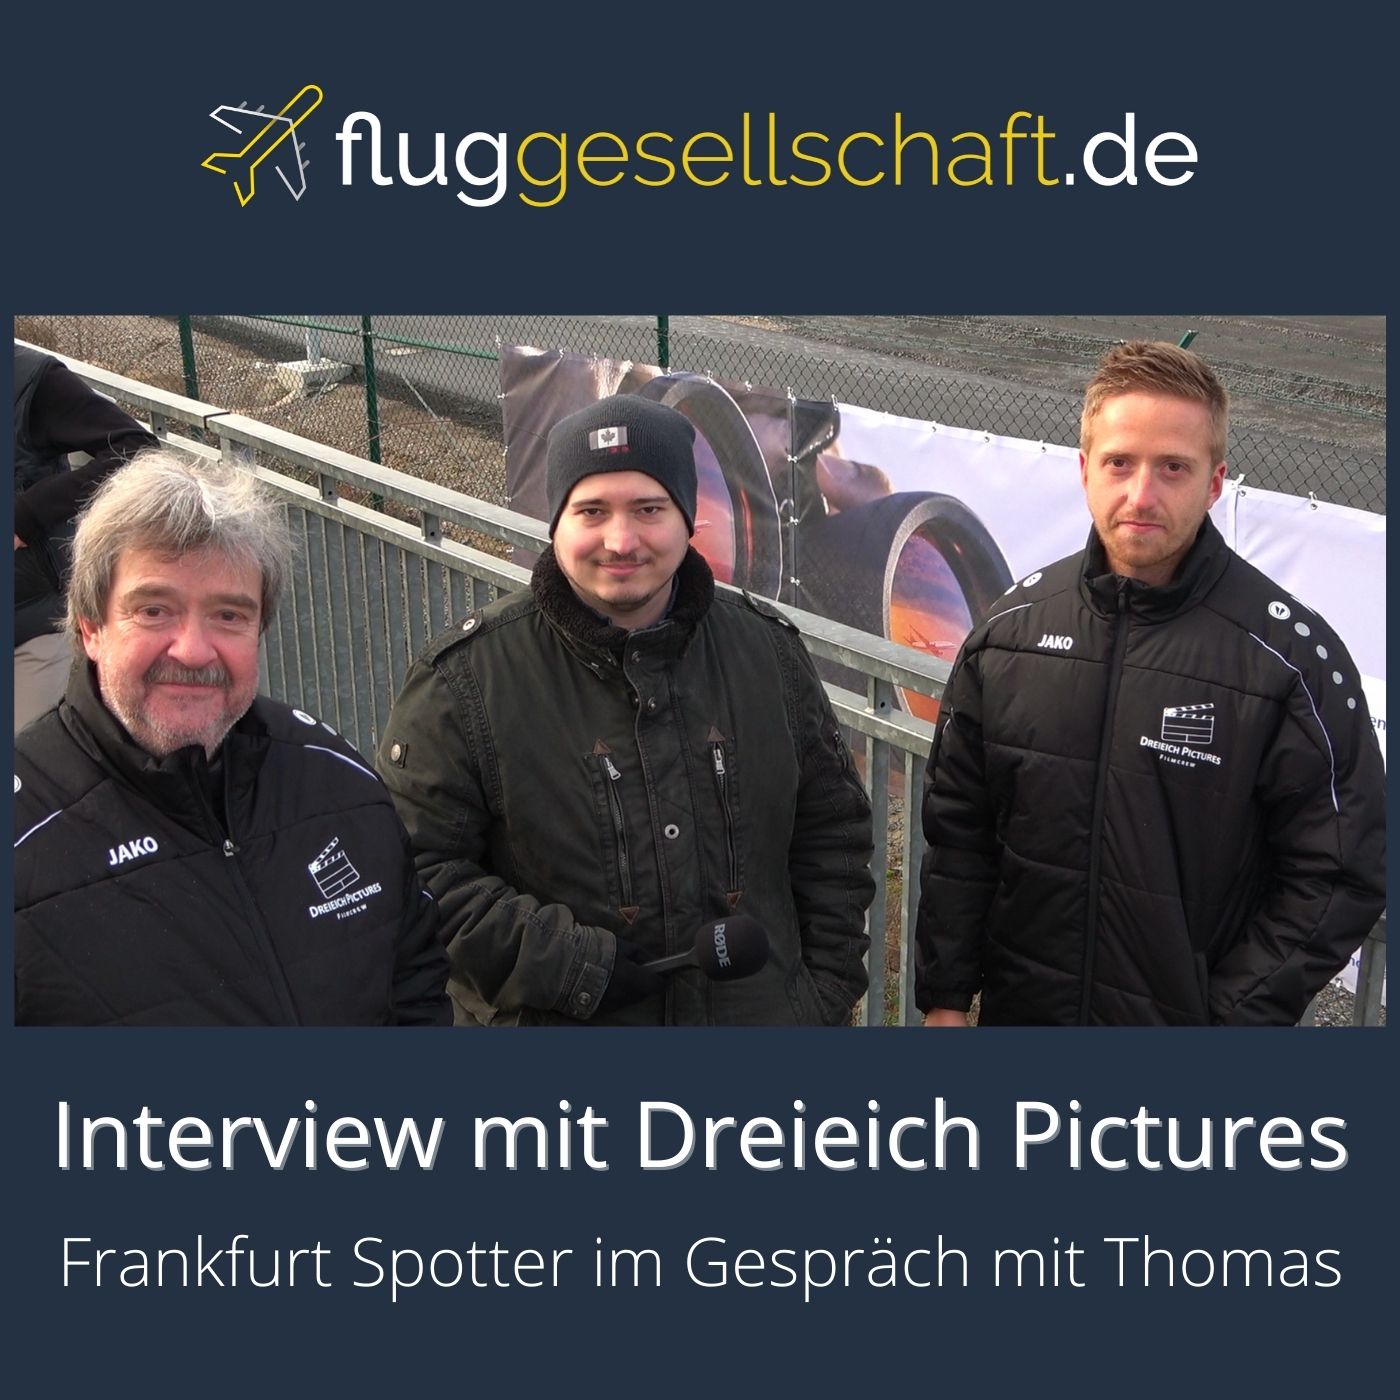 Dreieich Pictures im Planespotter-Interview